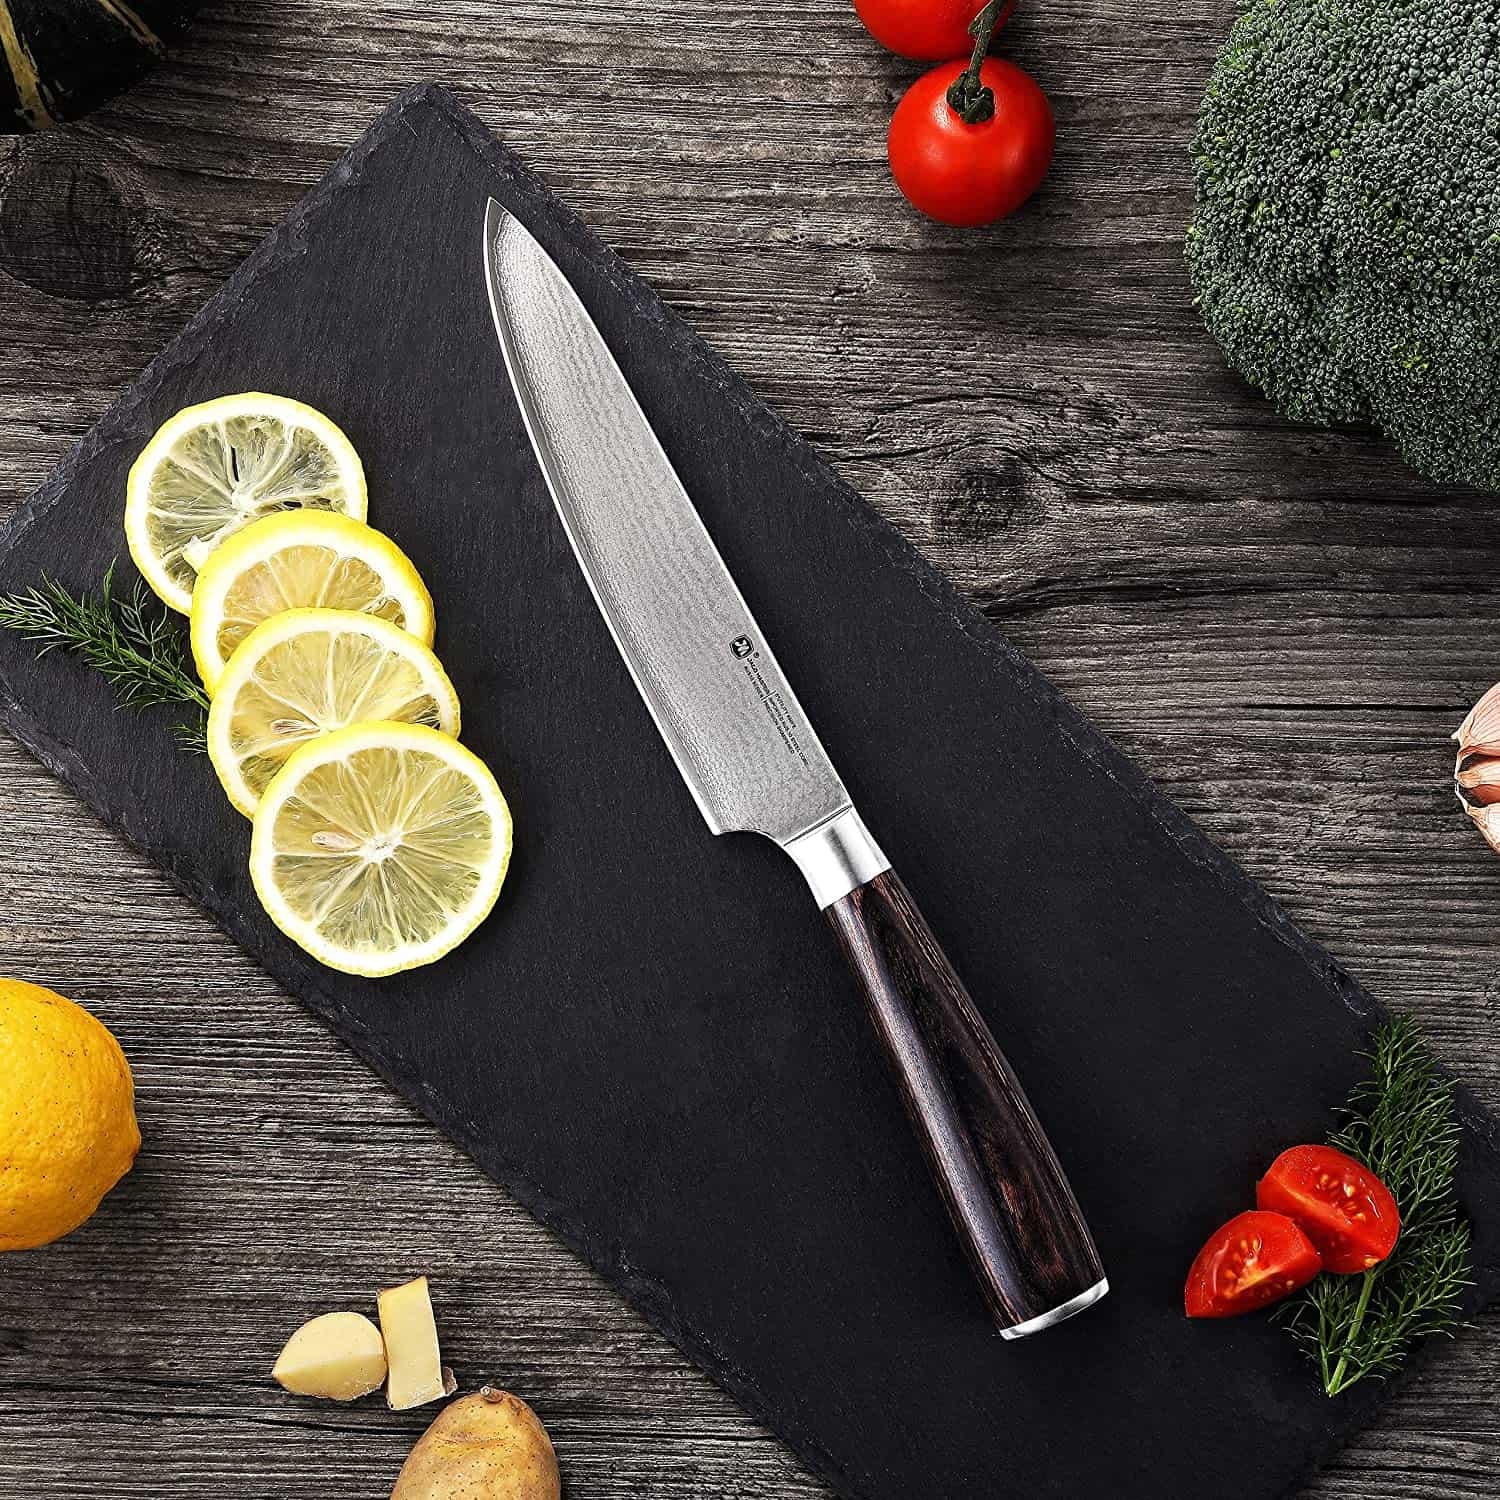 Bästa budget AUS 10 japansk stålkniv- Jaco Master 6 Utility Chef Knife med skärbräda